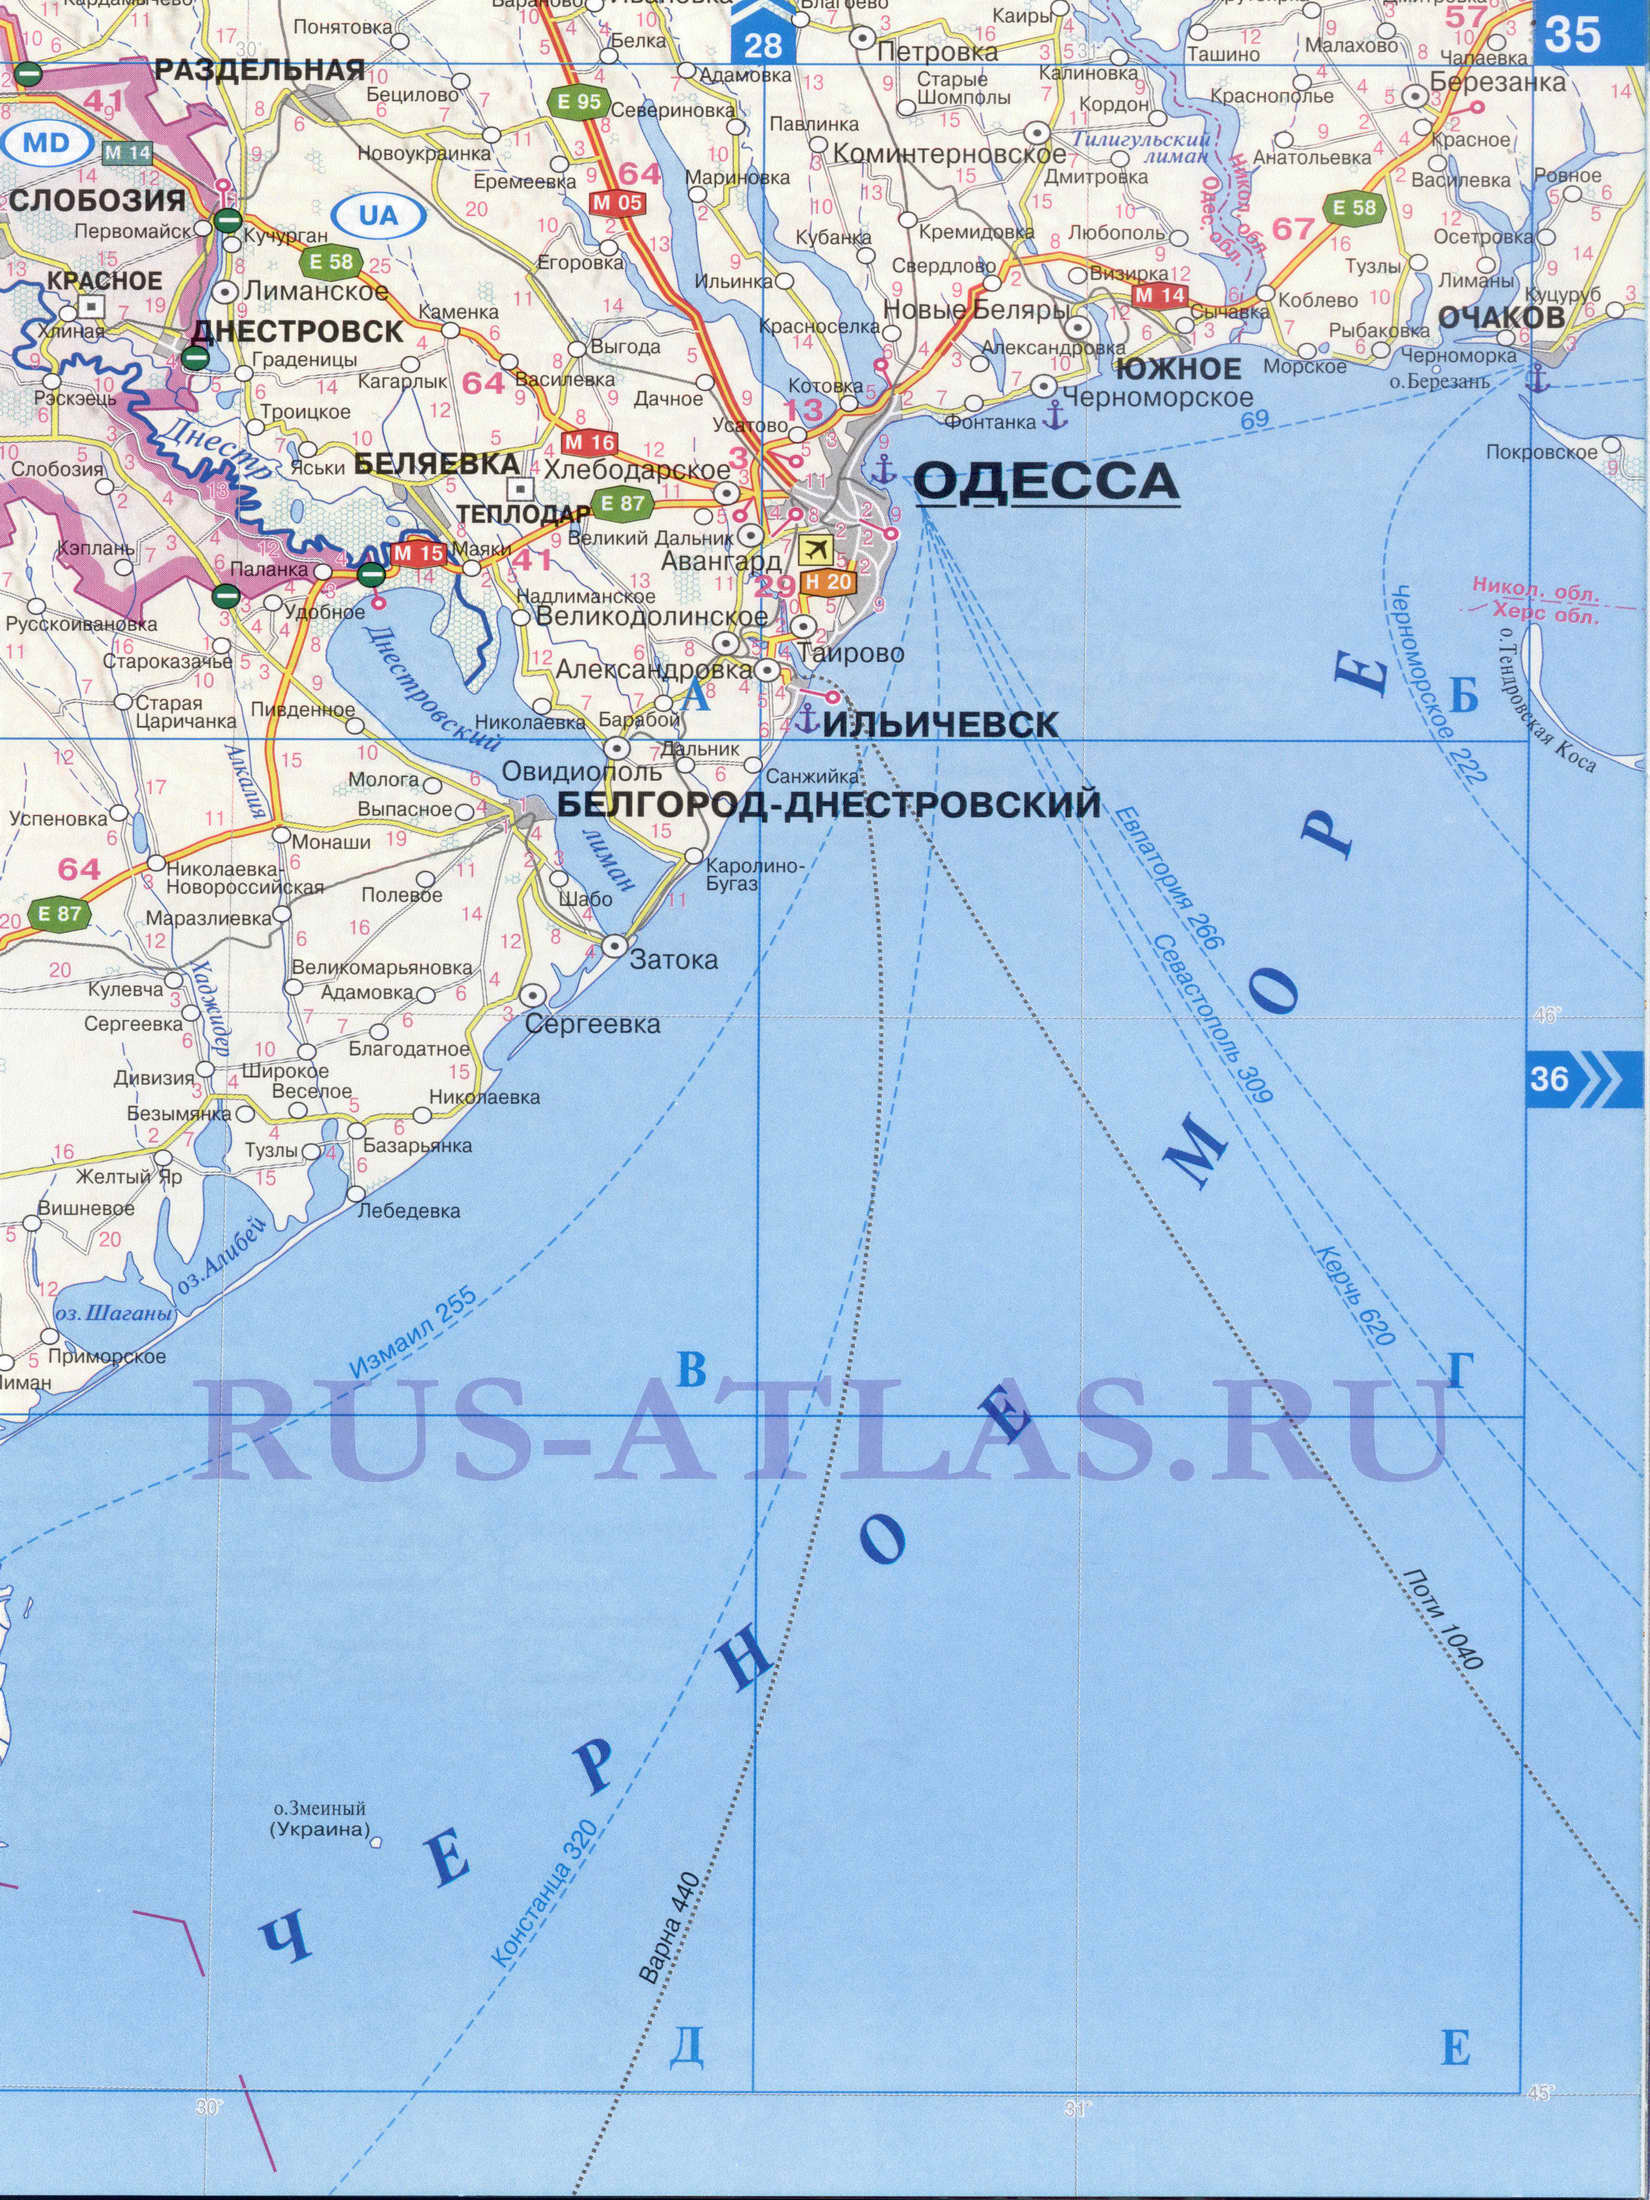 Автомобильная карта Одесской области. Атлас дорог СНГ - карта Одесской области и Молдавии, B1 - 